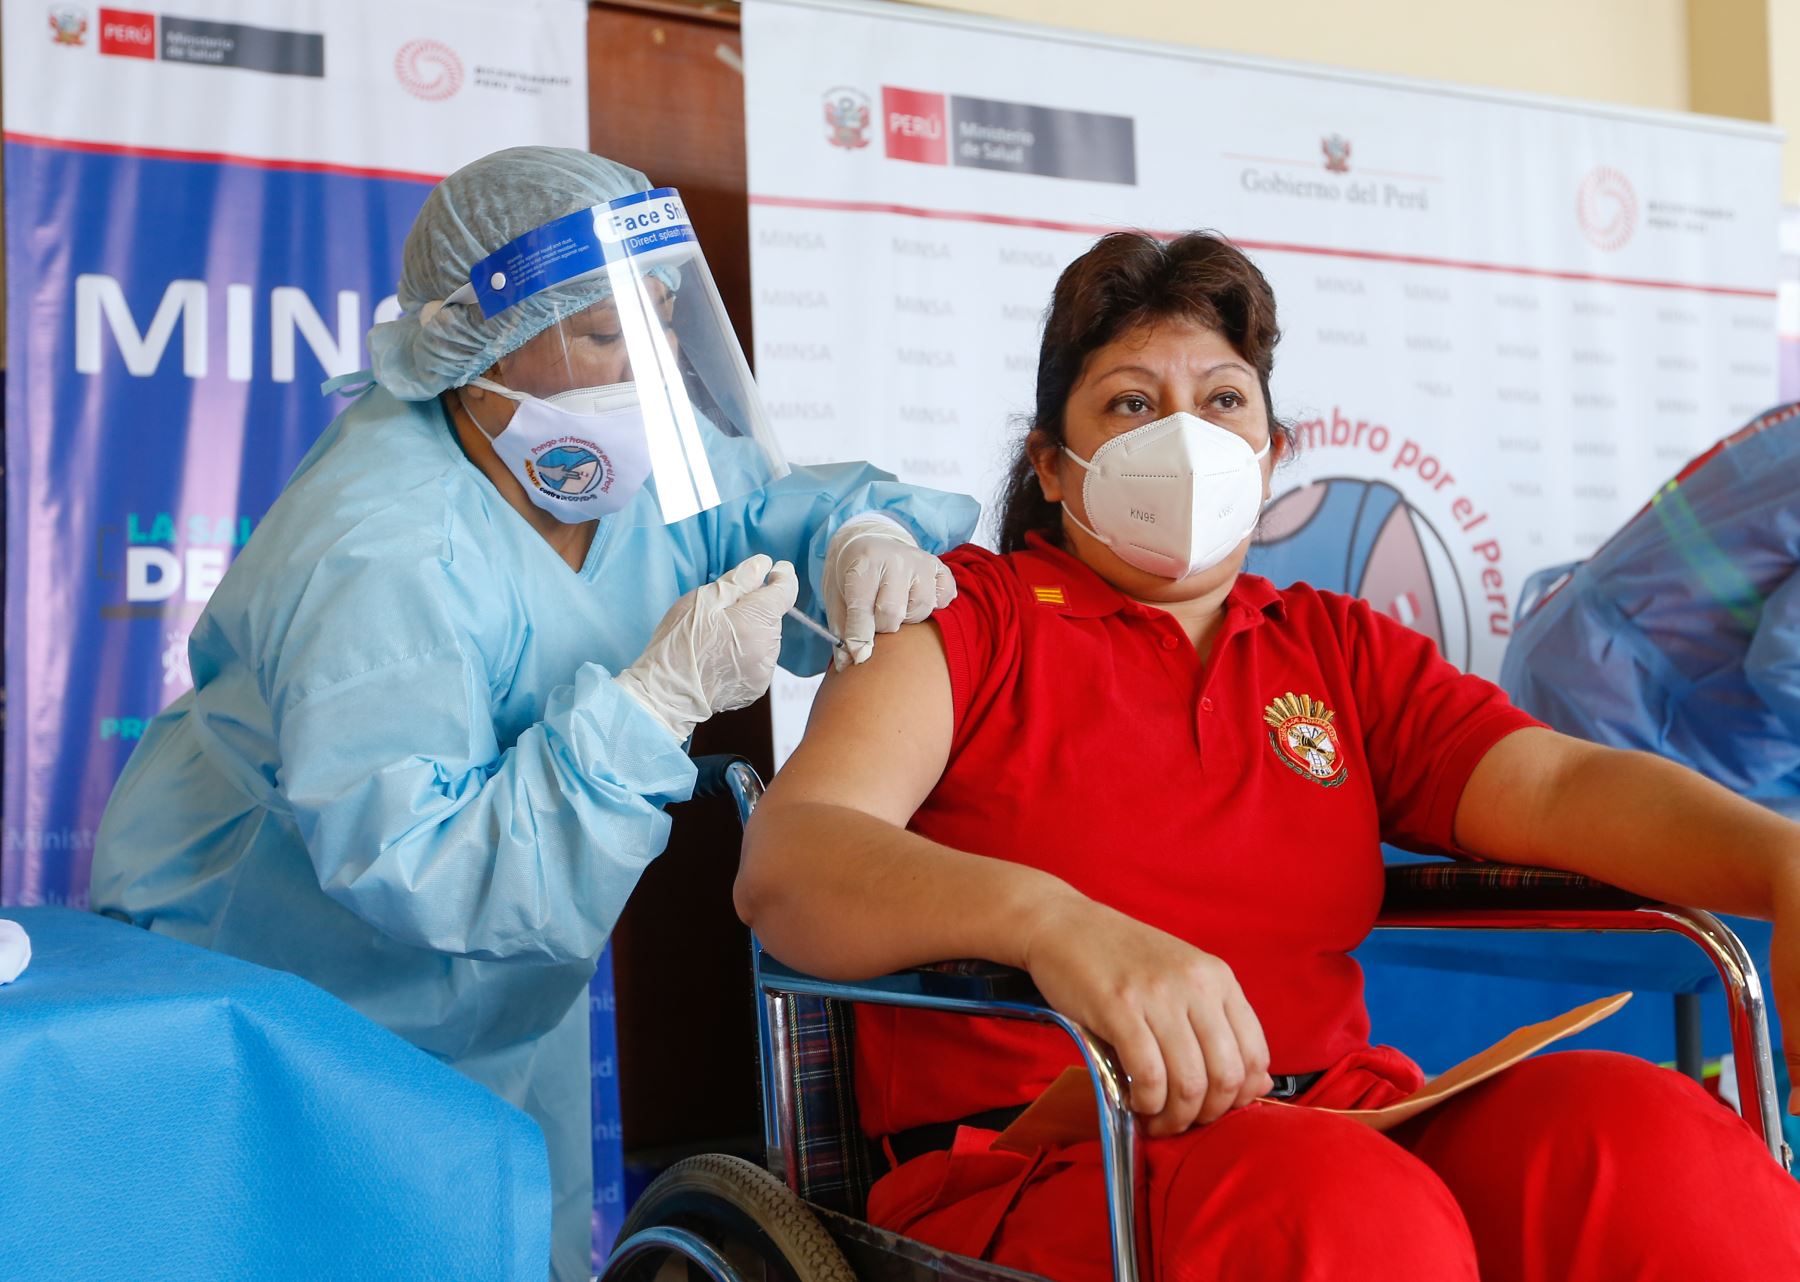 El presidente de la Republica,  Francisco Sagasti, junto con los titulares del Minsa y Mininter, supervisan el inicio del proceso de vacunación contra la covid-19 a los integrantes del Cuerpo General de Bomberos Voluntarios del Perú.
Foto: ANDINA/Minsa